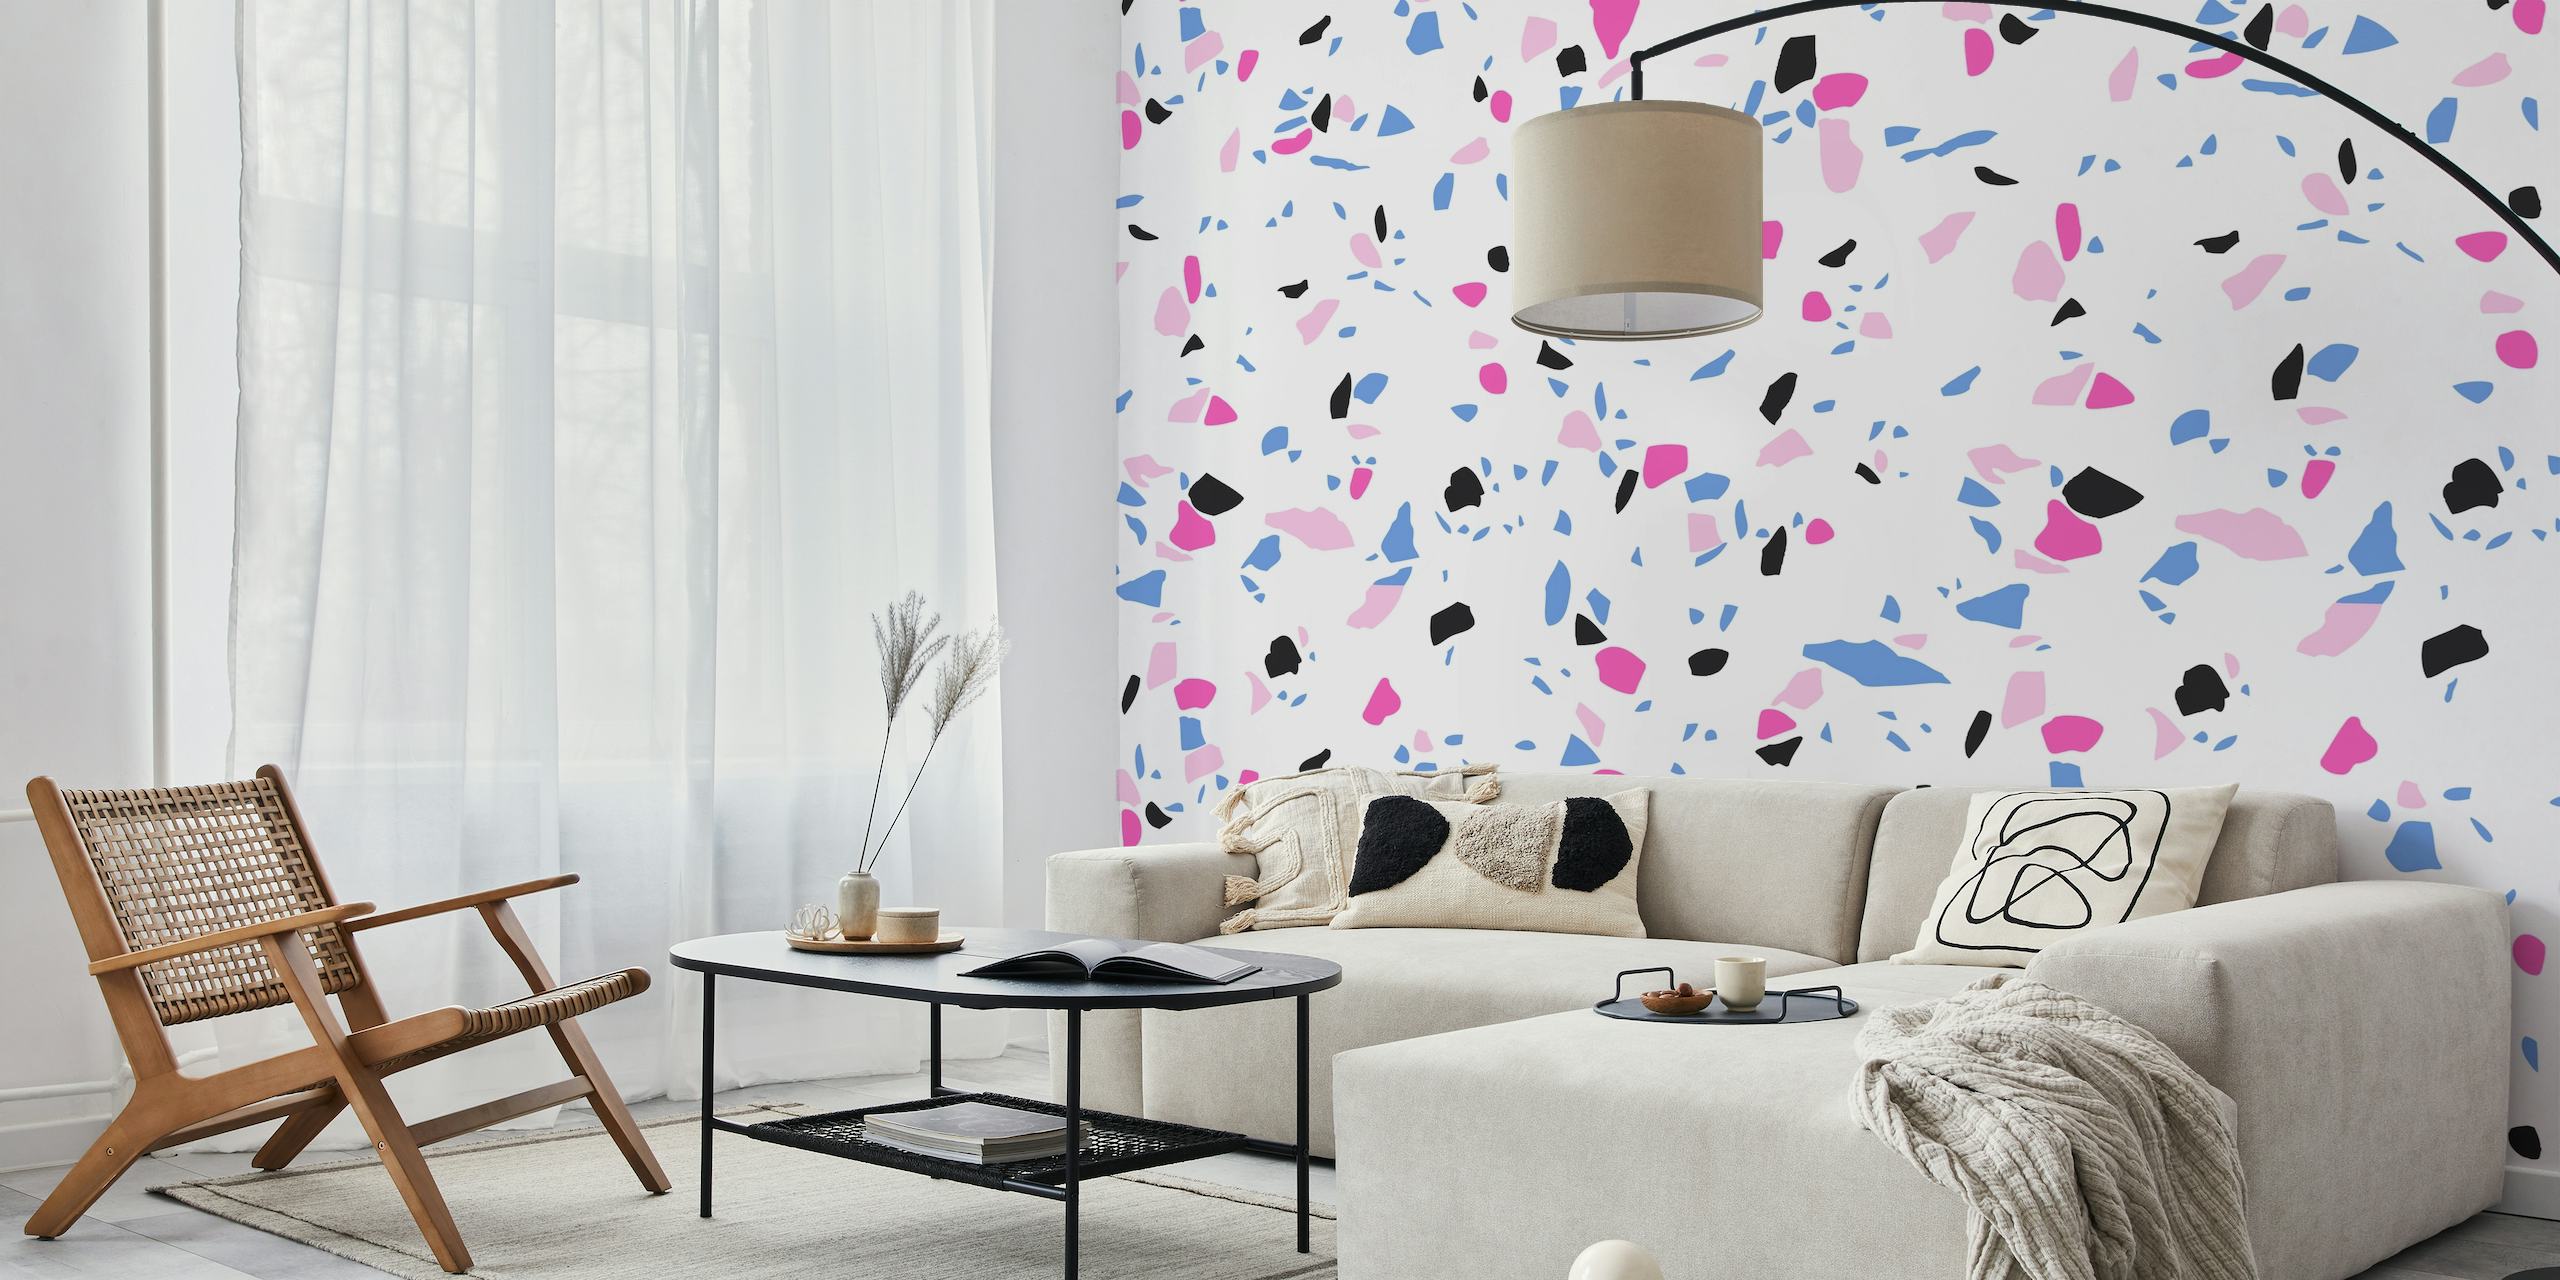 Terrazzo Style 2 fotobehang met roze, blauwe en zwarte spikkels op een witte achtergrond